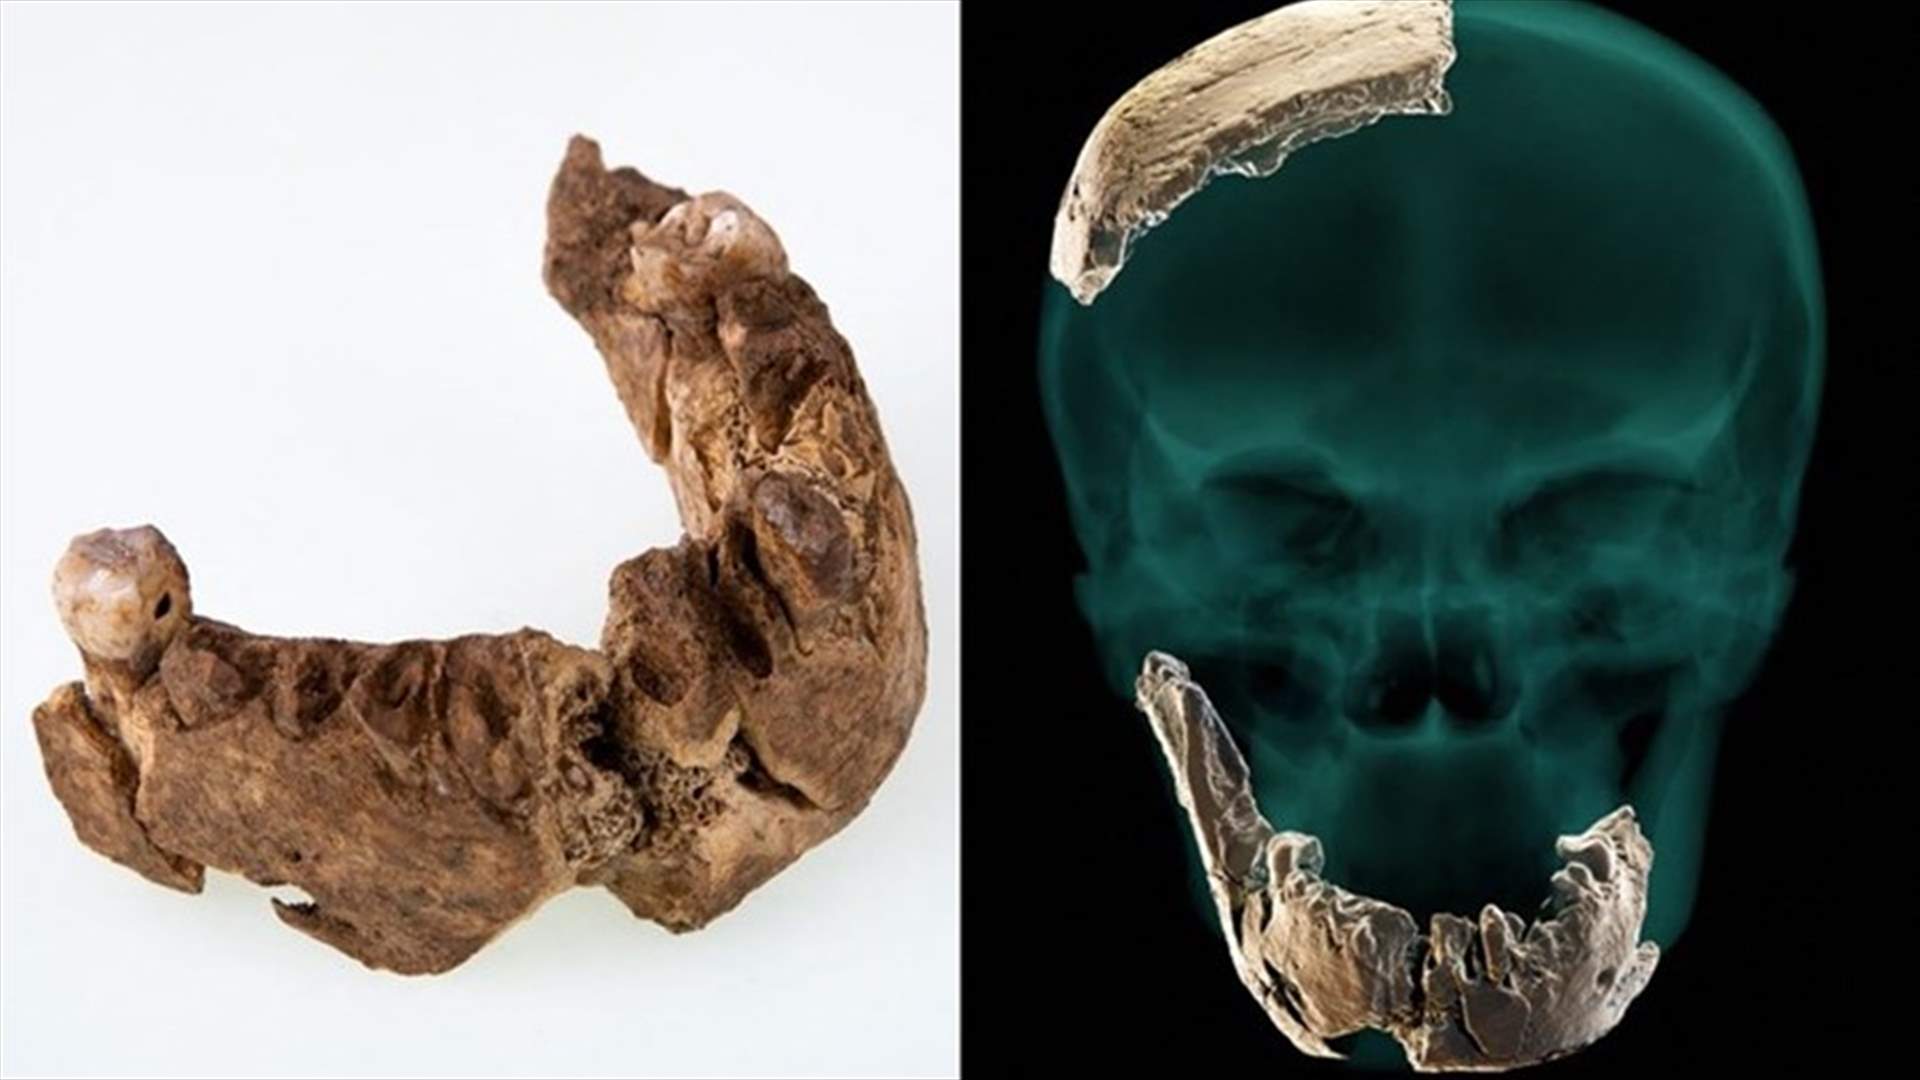 علماء آثار عثروا على أحفورة عظمة فك... قد تعطي لمحة عن أول البشر الذين سكنوا أوروبا